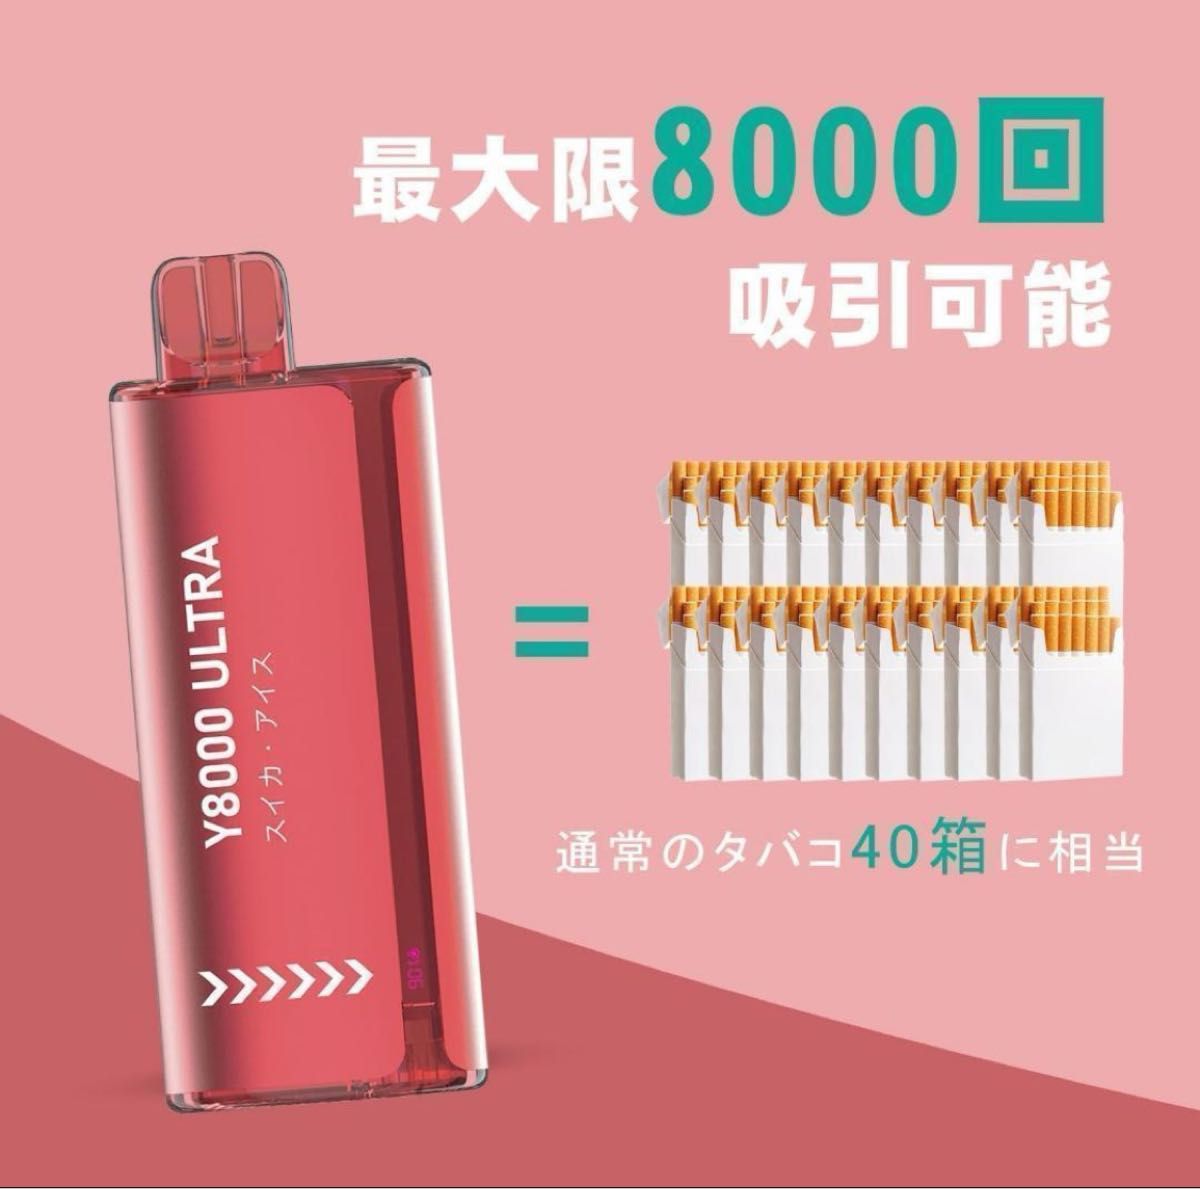 【リアル風味】 電子タバコ 使い捨て フレーバー 本体 8000回吸引可能 安全 コンパクト スイカ風味 20ml ポケットに入る